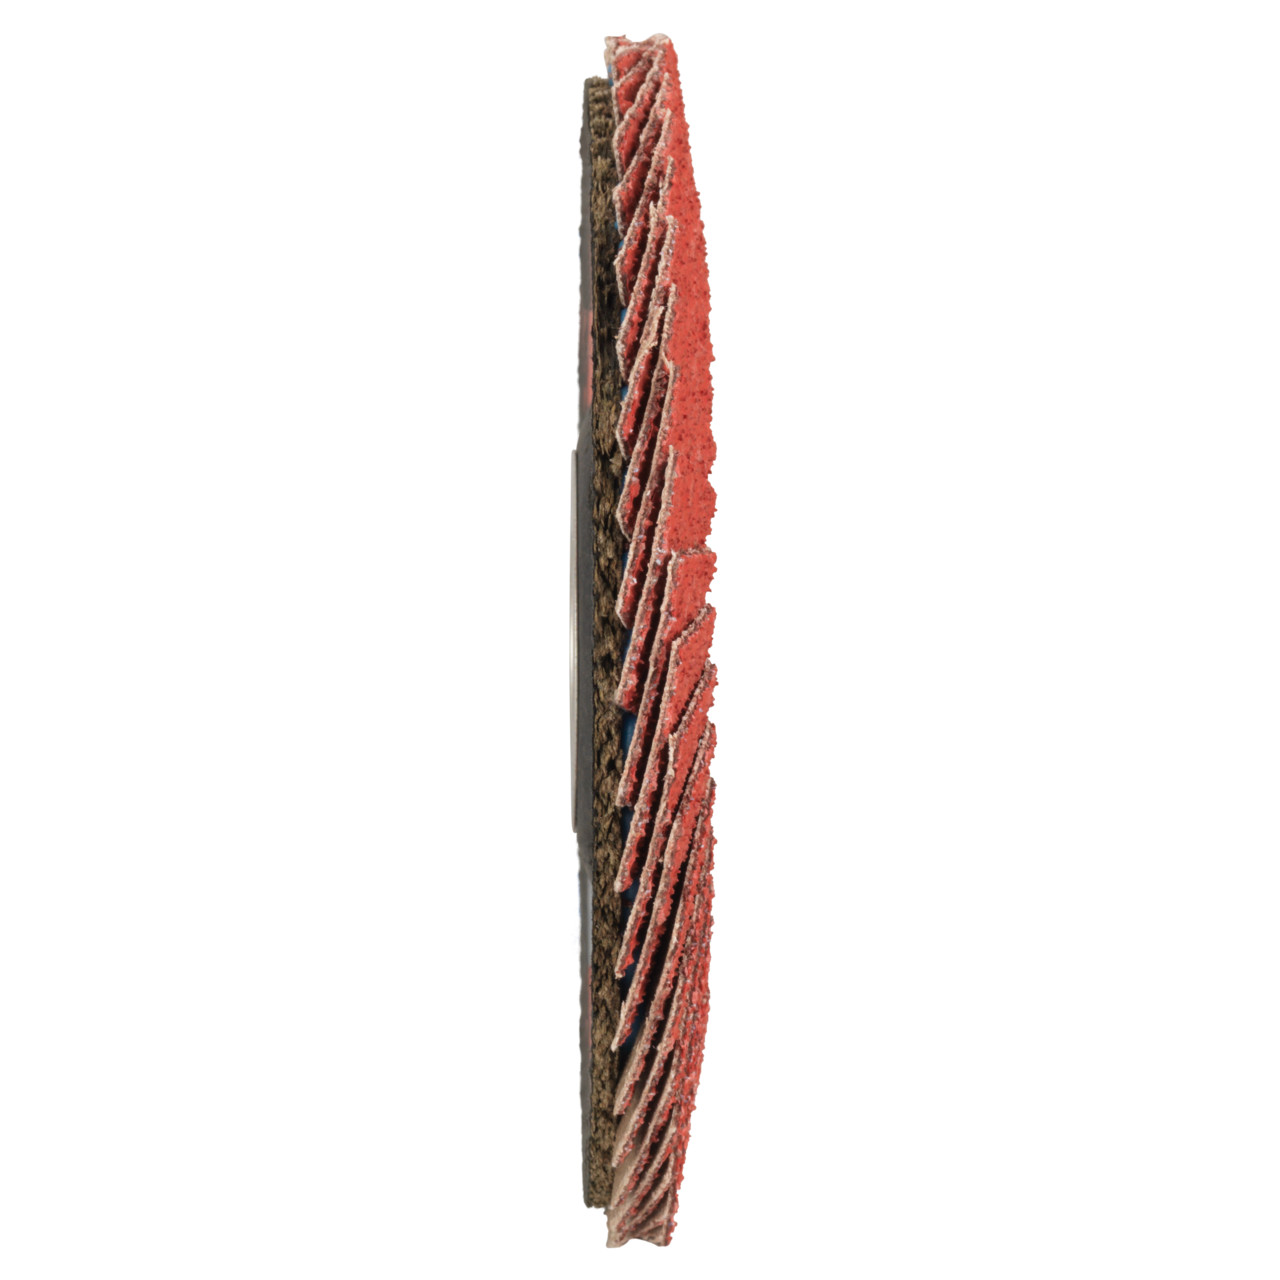 TYROLIT Fächerscheibe DxH 115x22,2 CERAMIC für Edelstahl, P60, Form: 27A - gekröpfte Ausführung (Glasfaserträgerkörperausführung), Art. 645132